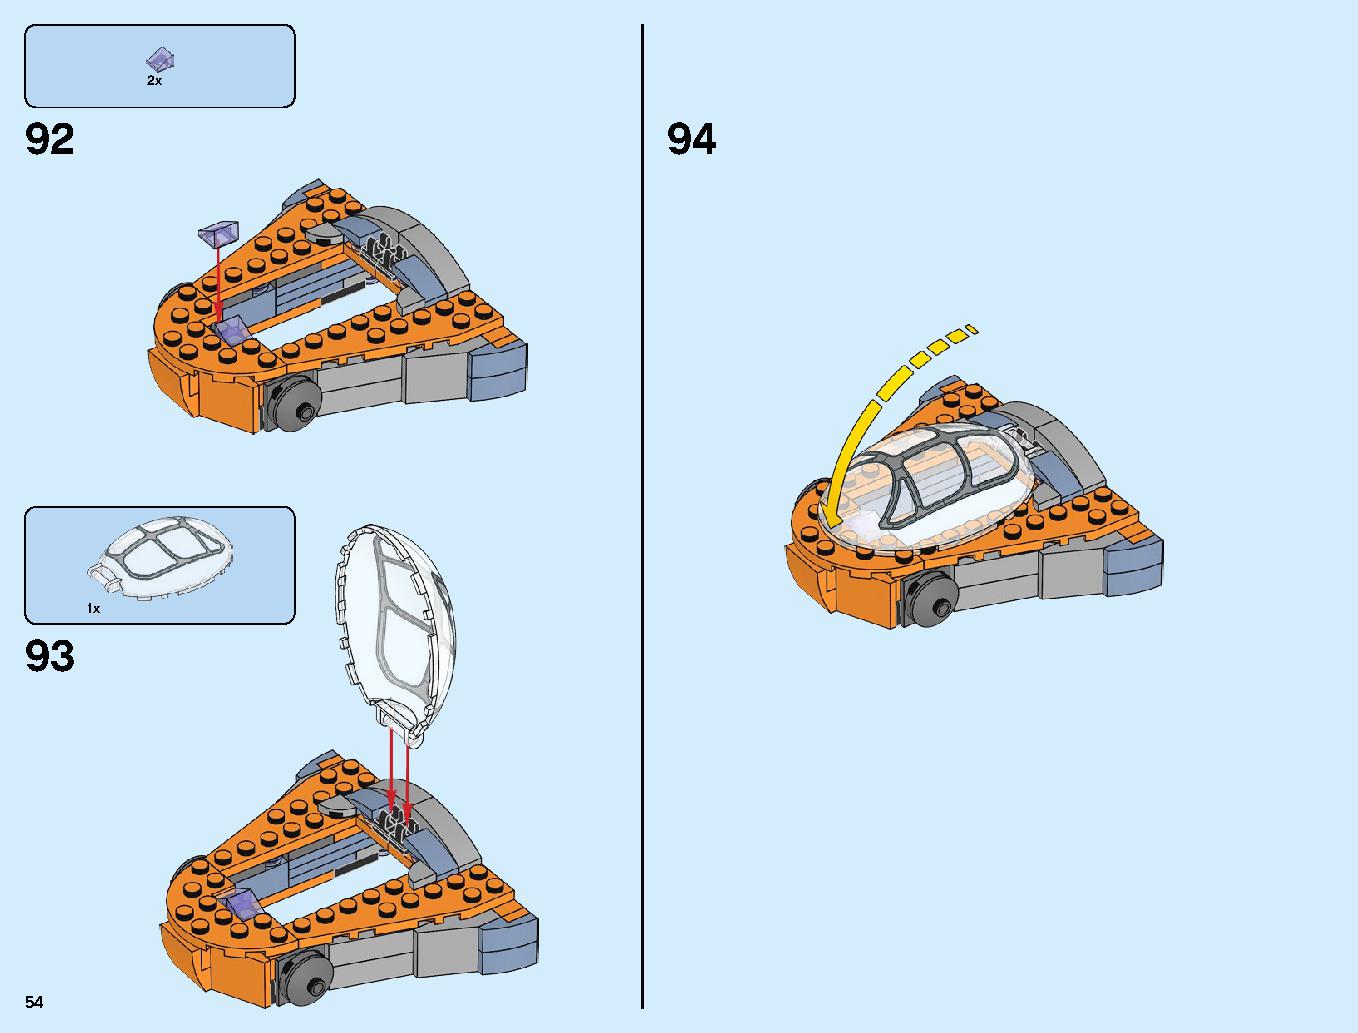 어벤져스 타노스: 최후의 전투 76107 레고 세트 제품정보 레고 조립설명서 54 page